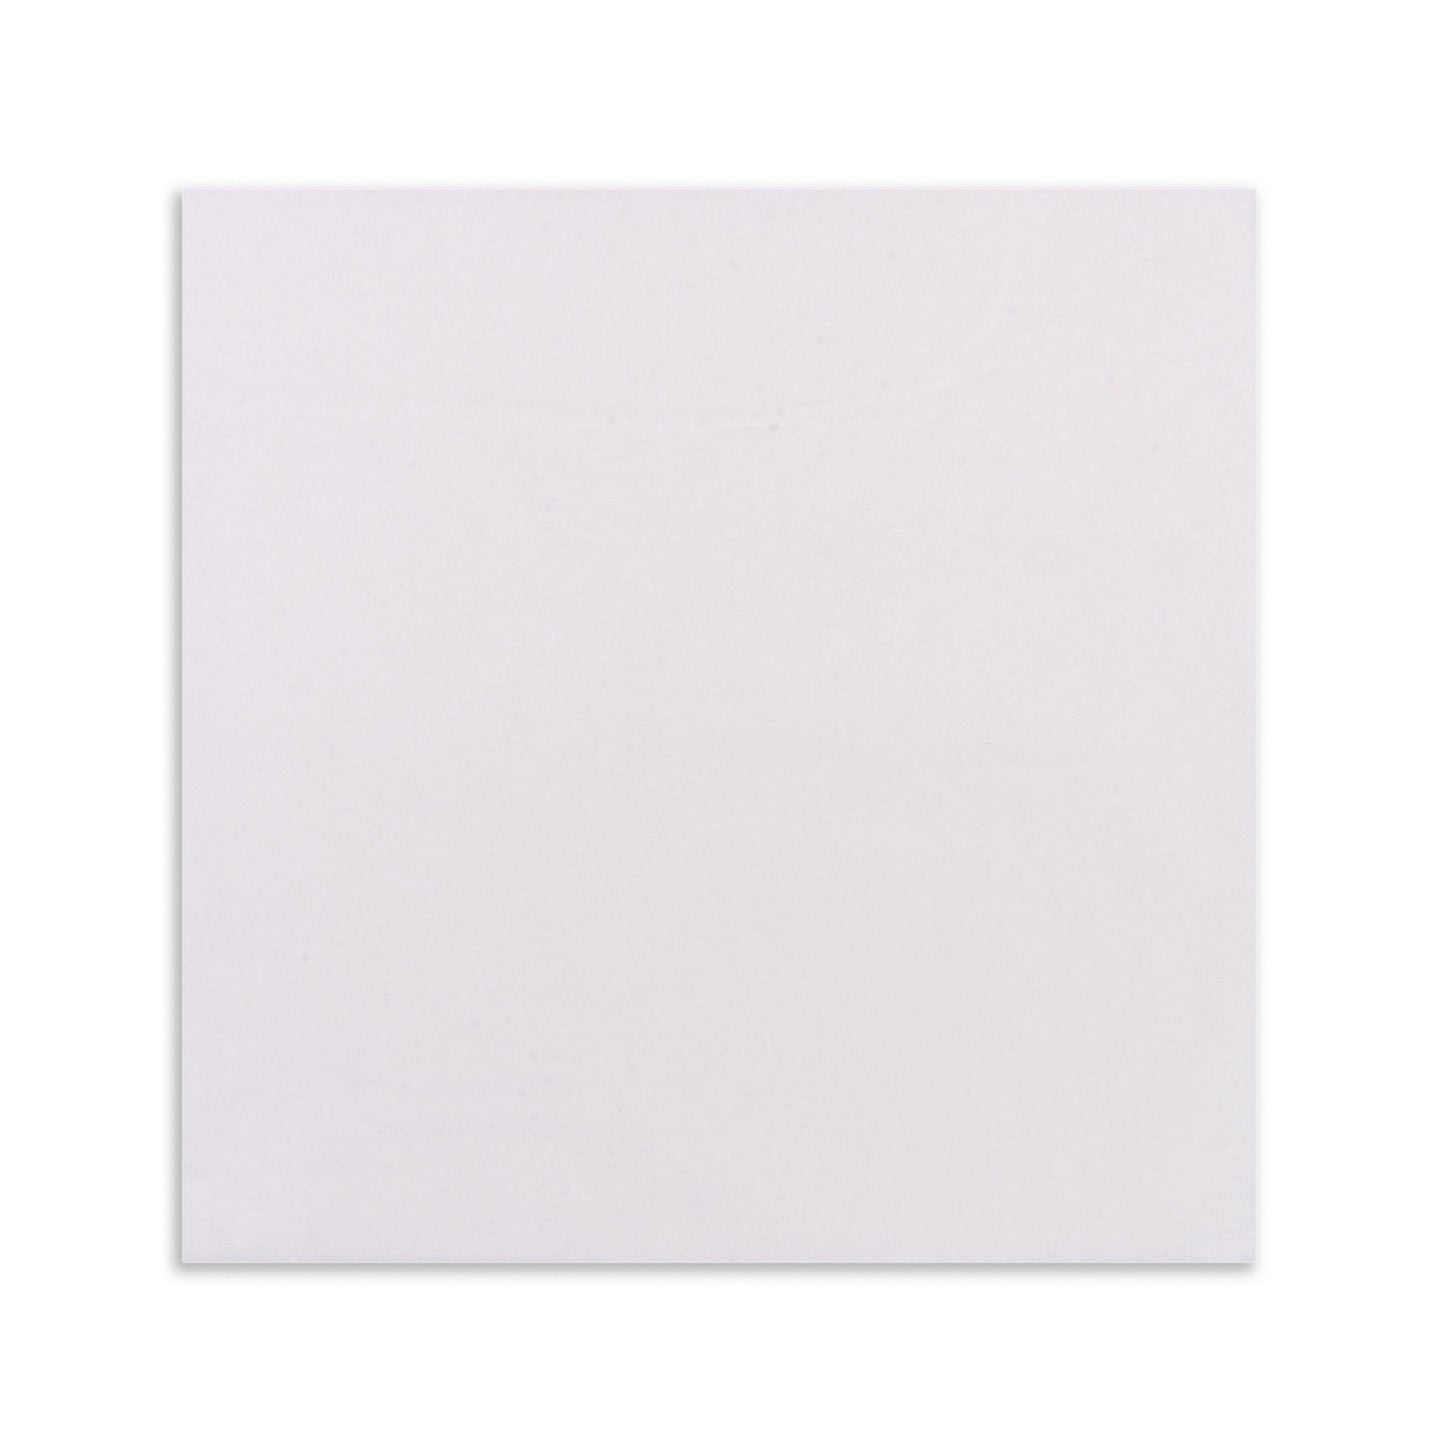 Luxenap Super Lux Disposable Napkins Pure White 40.64 cm 25 count